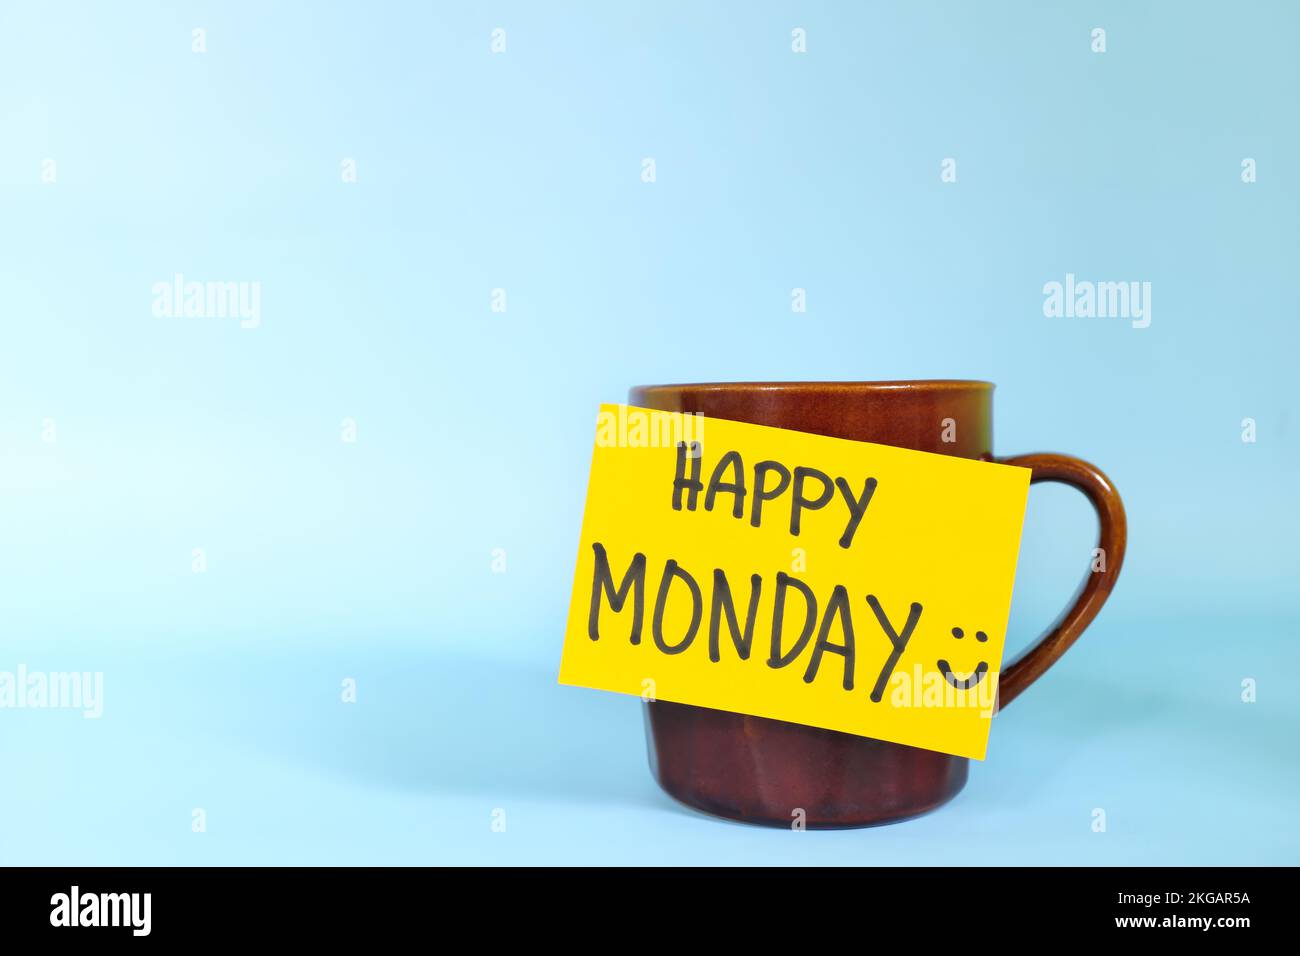 Willkommen, hallo und Happy Monday Concept. Selektiver Fokus der Kaffeetasse mit hellgelbem Papierzettel und schriftlicher Nachricht isoliert auf blauem Hintergrund. Stockfoto